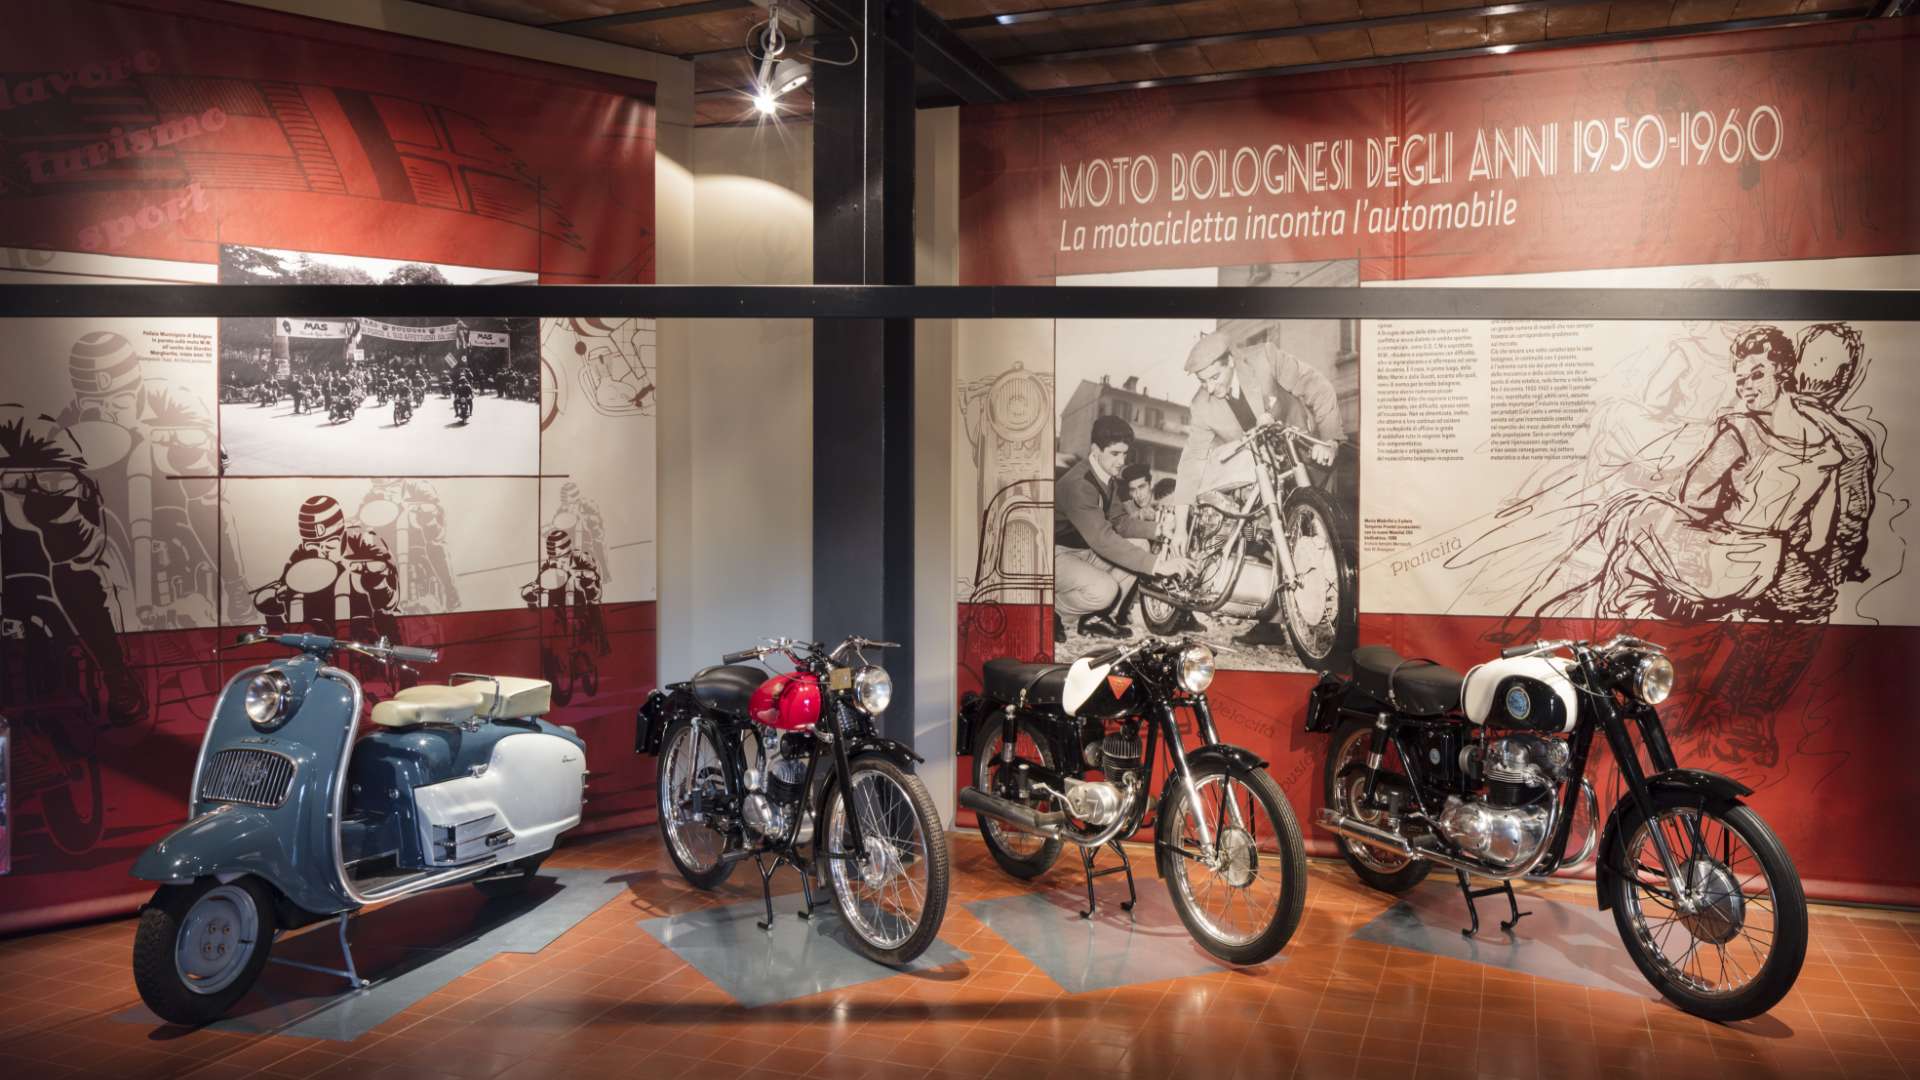 Moto bolognesi degli anni 50-60, nella Motor Valley una mostra che celebra un grande passato.